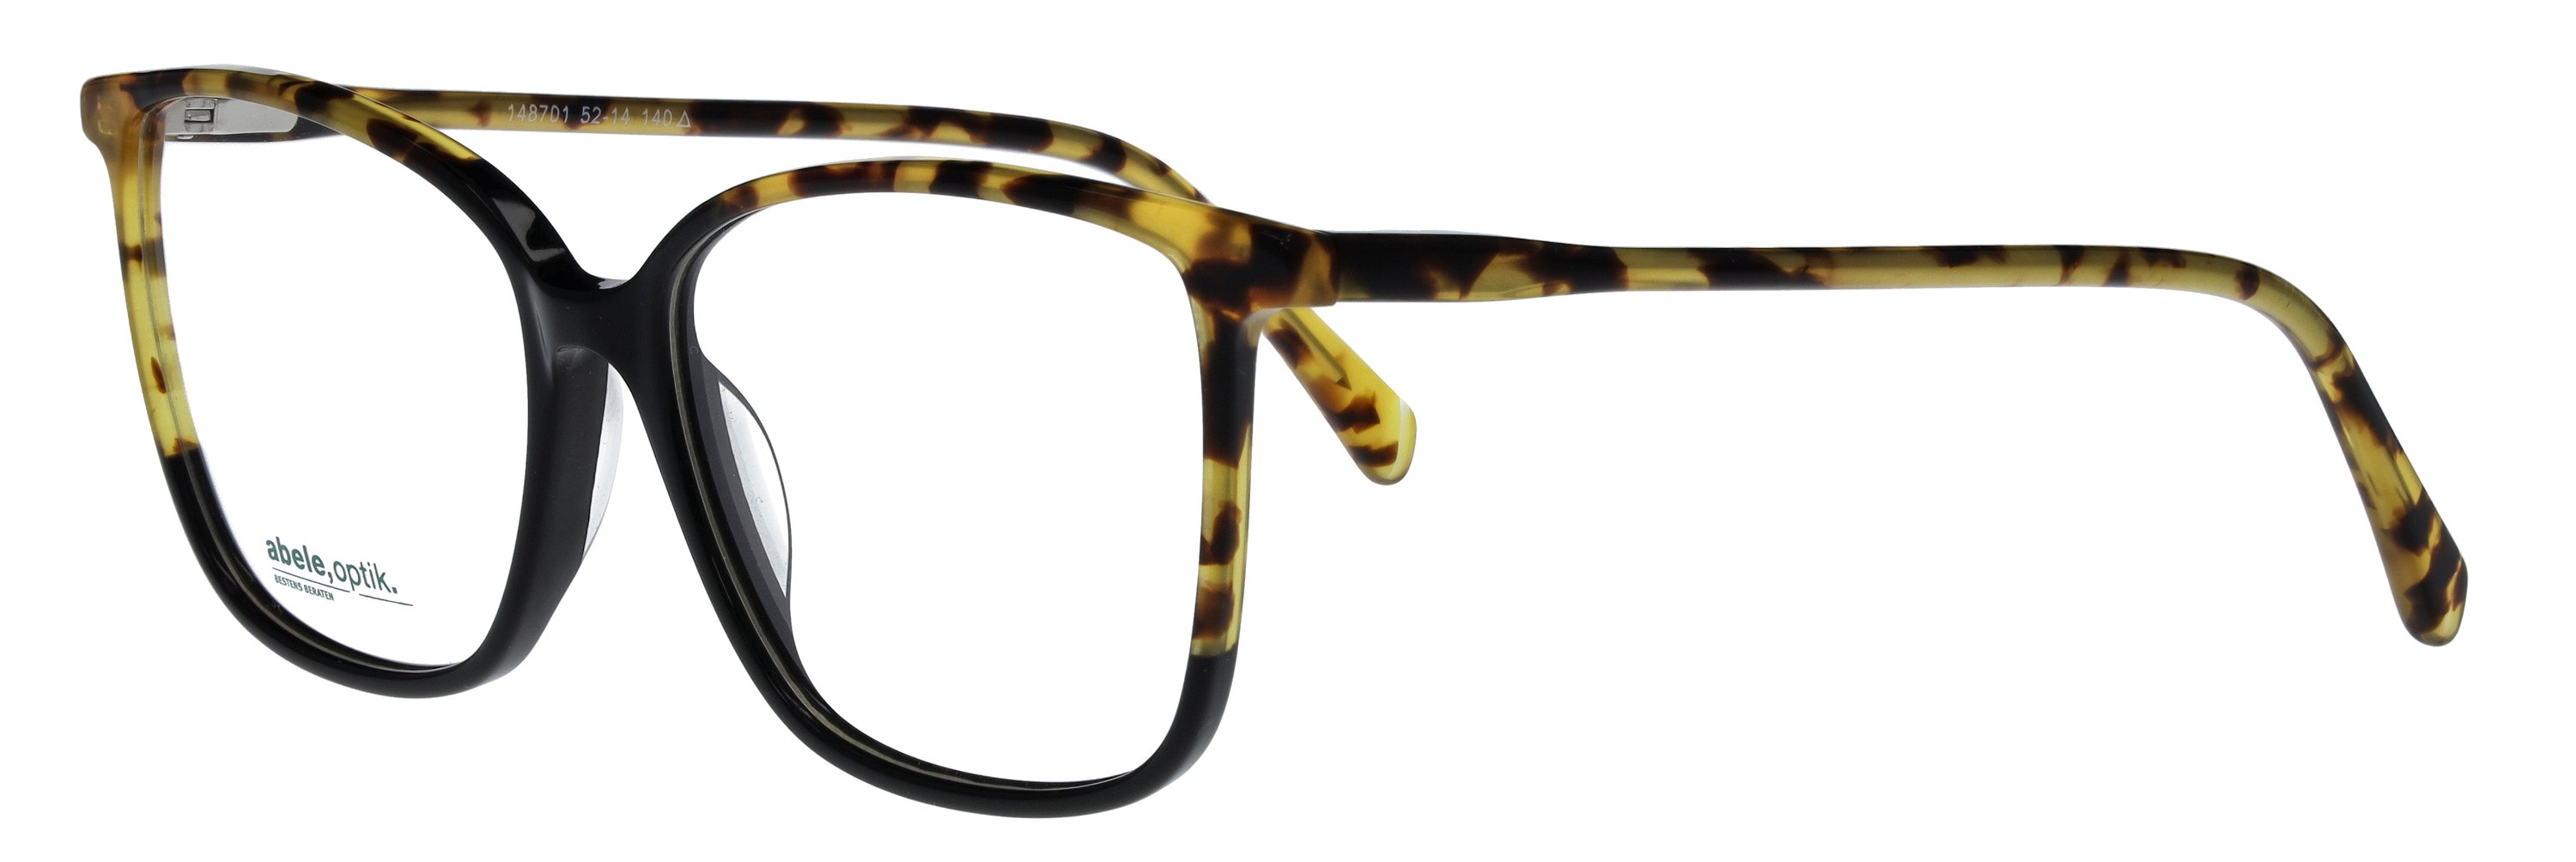 Das Bild zeigt die Korrektionsbrille 148701 von der Marke Abele Optik in schwarz-gelb havanna.